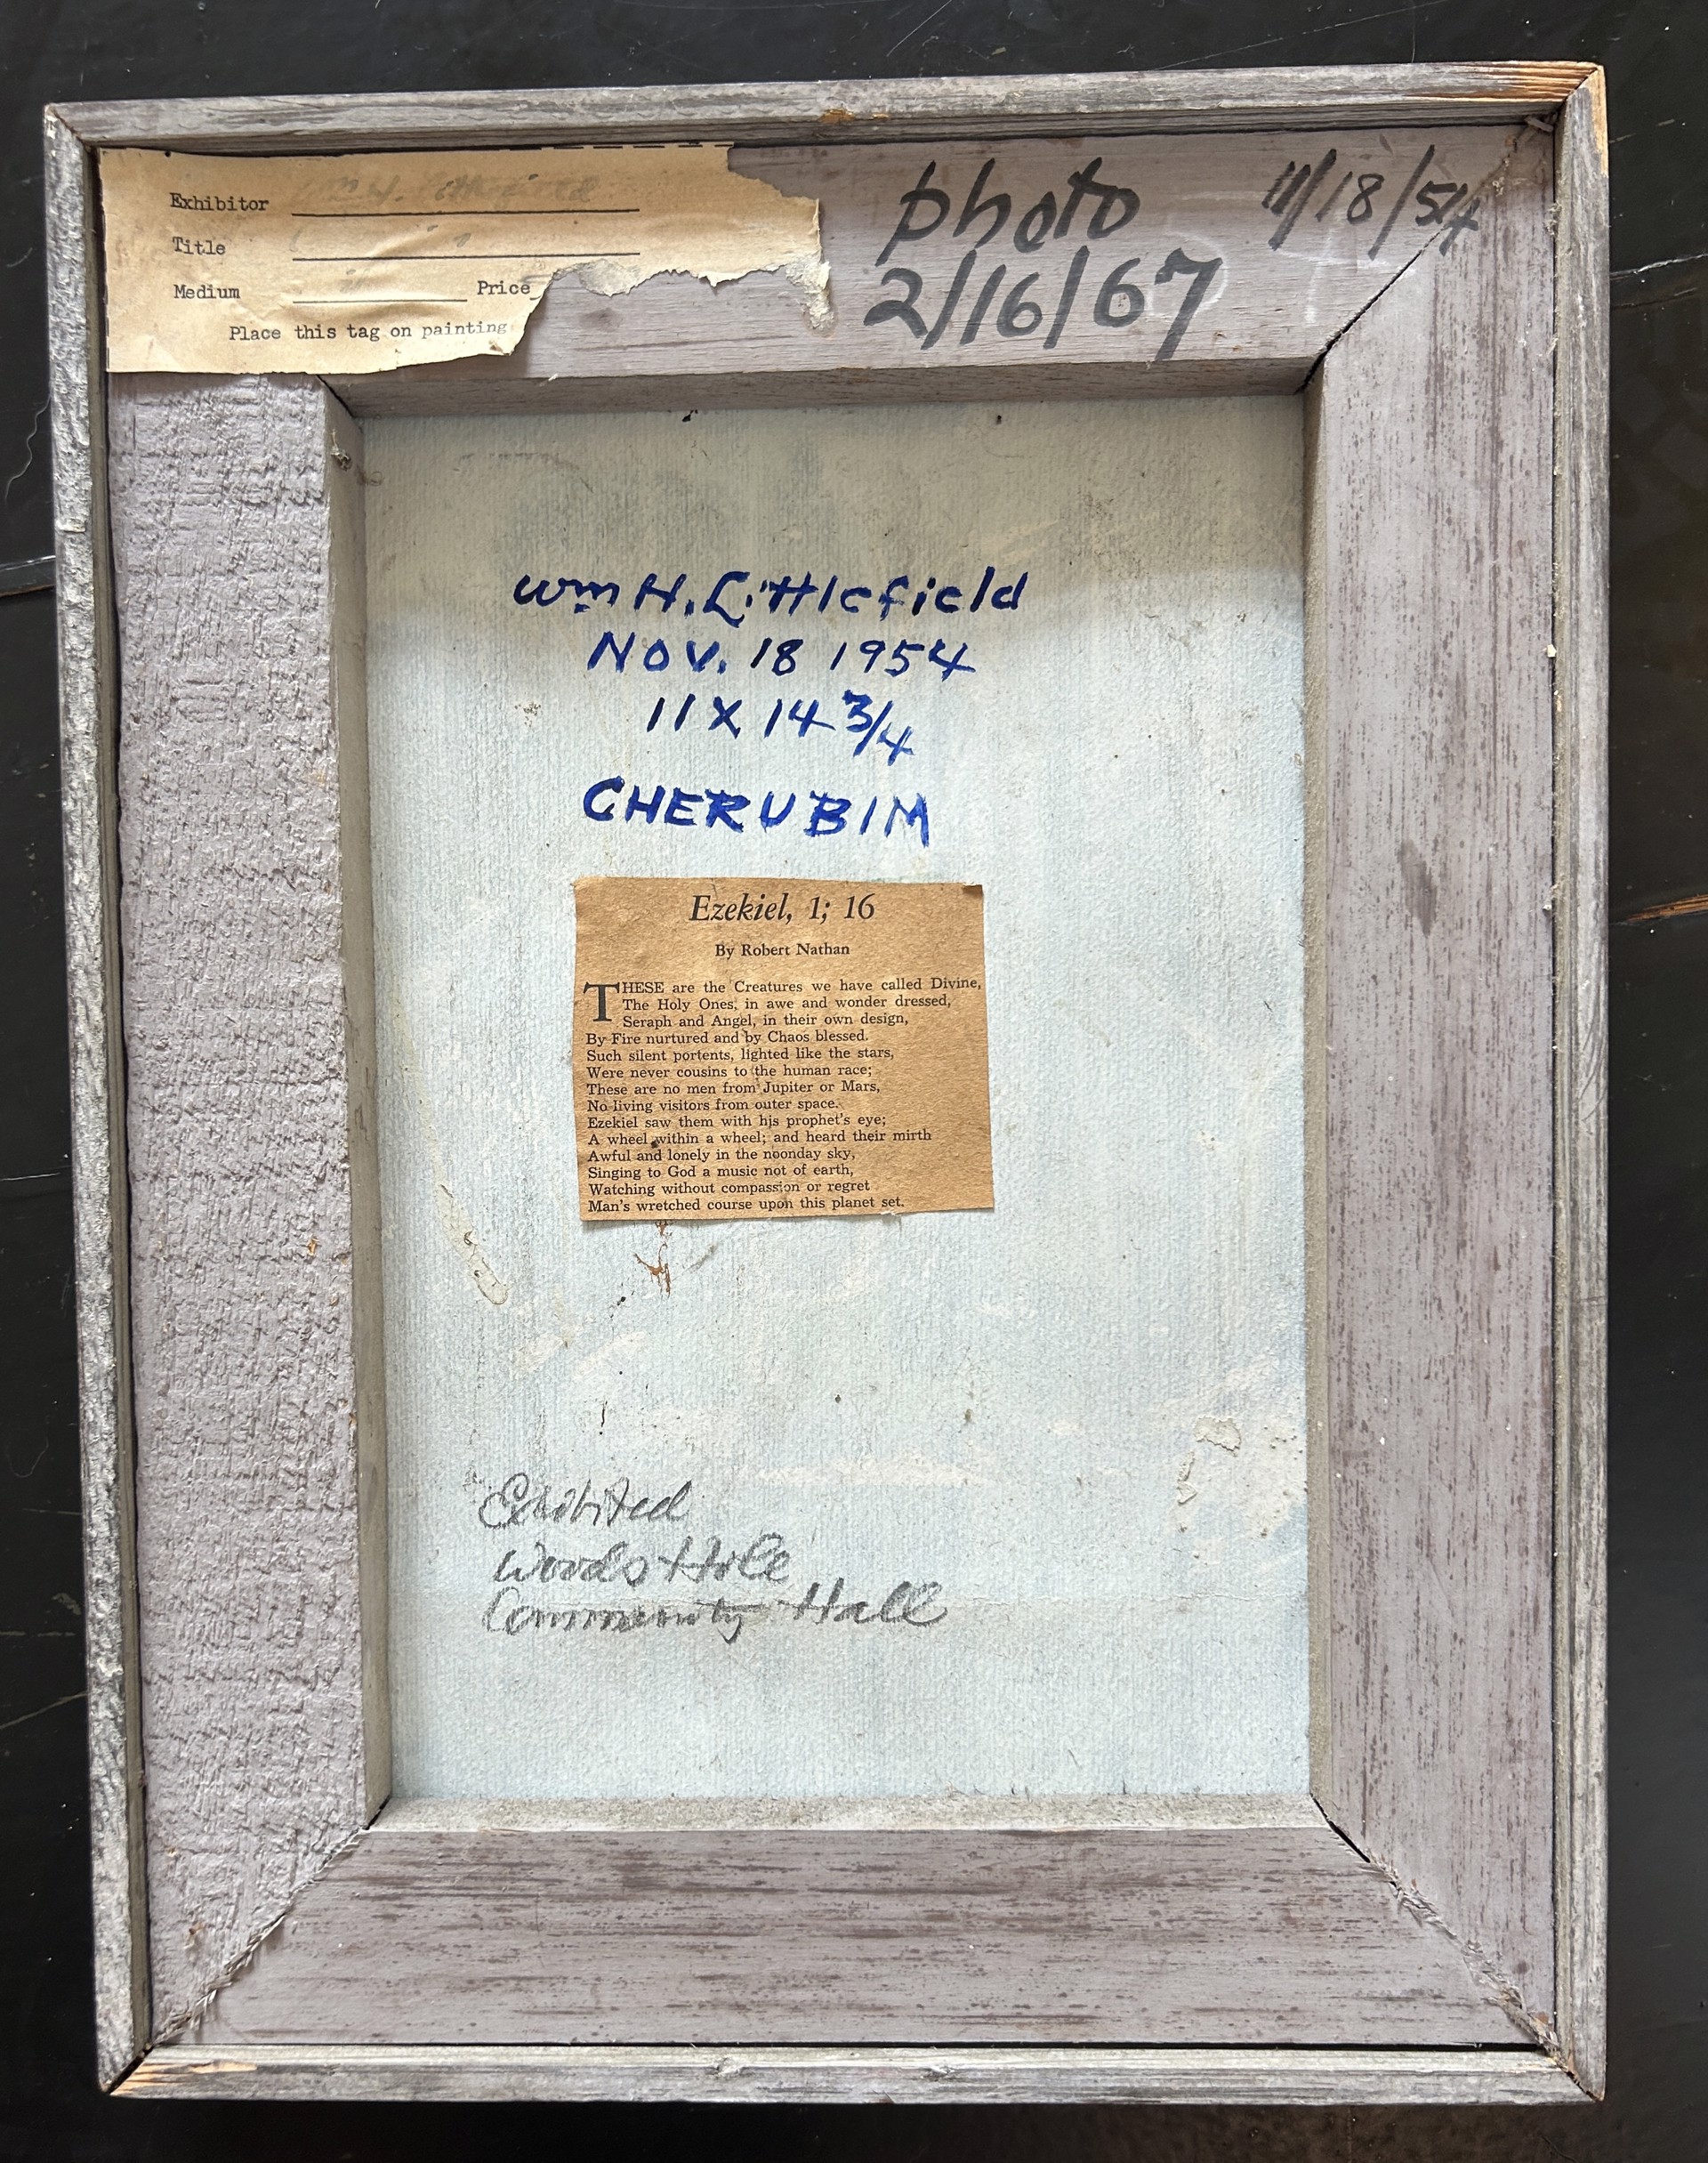 Cherubim by William H. Littlefield